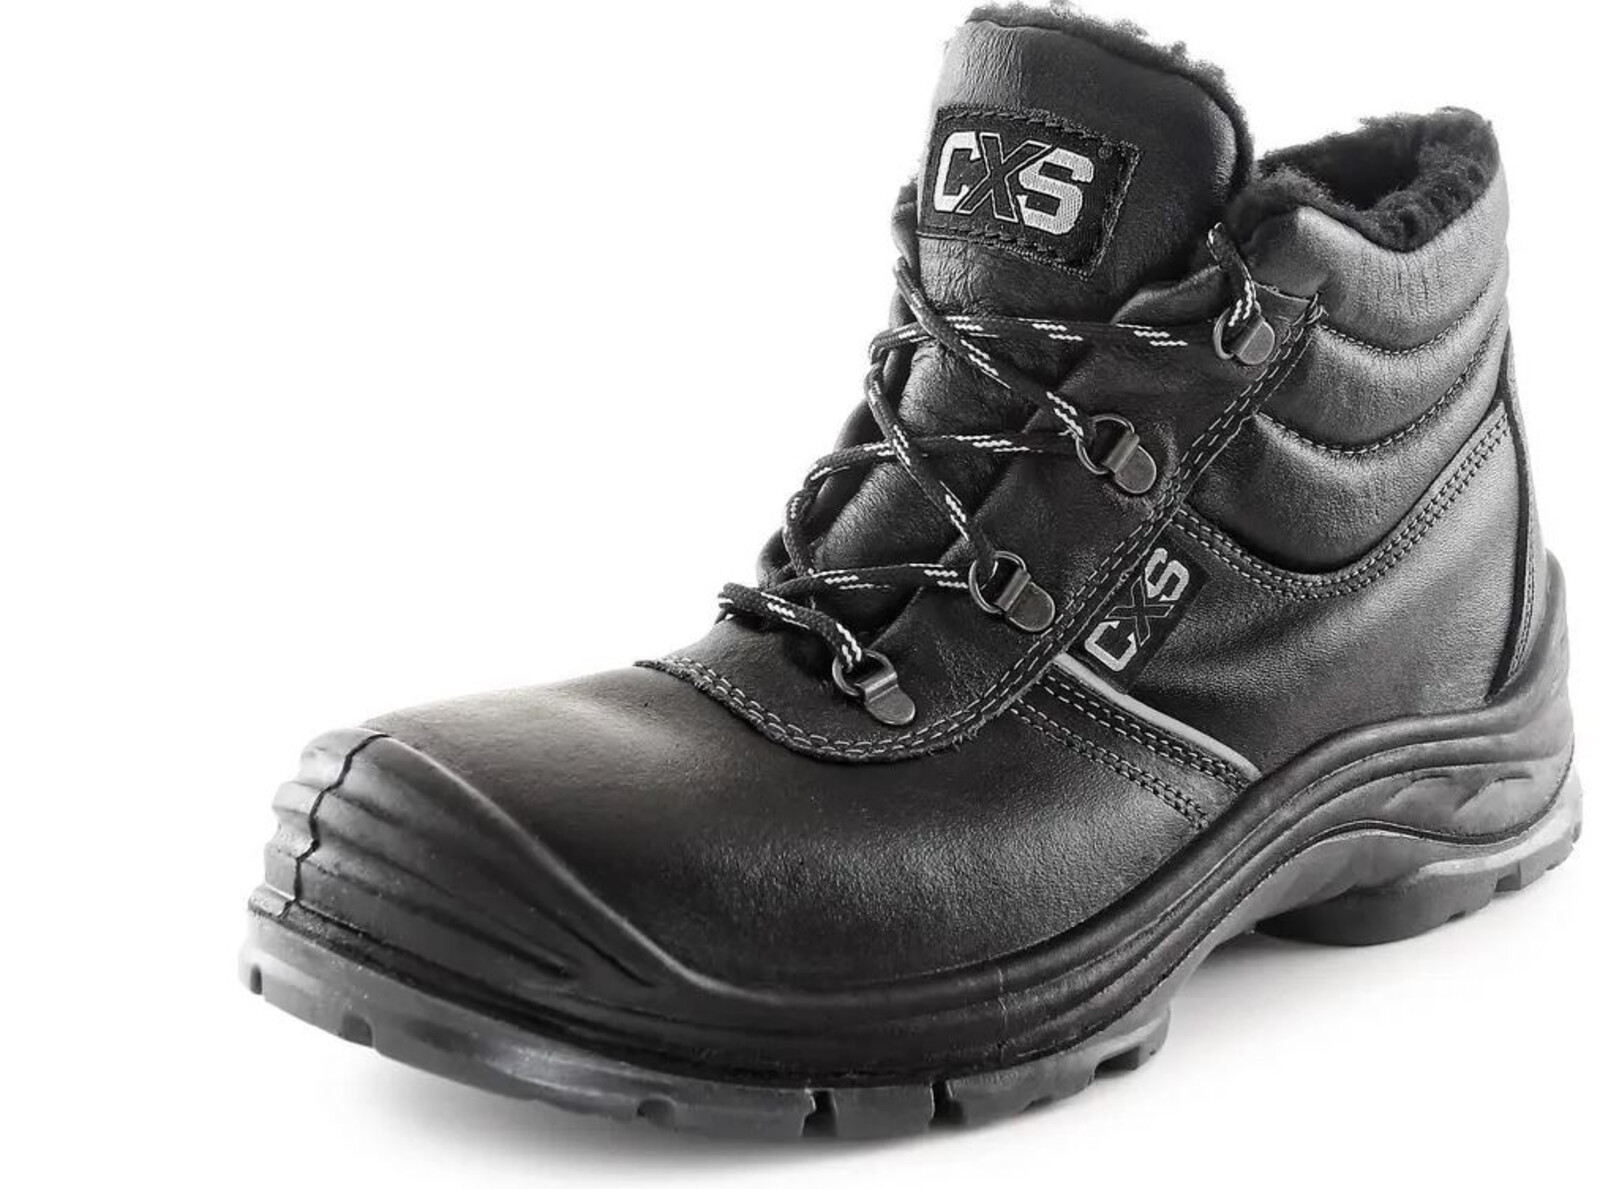 Zimná bezpečnostná členková obuv CXS Safety Steel Nickel S3 - veľkosť: 40, farba: čierna